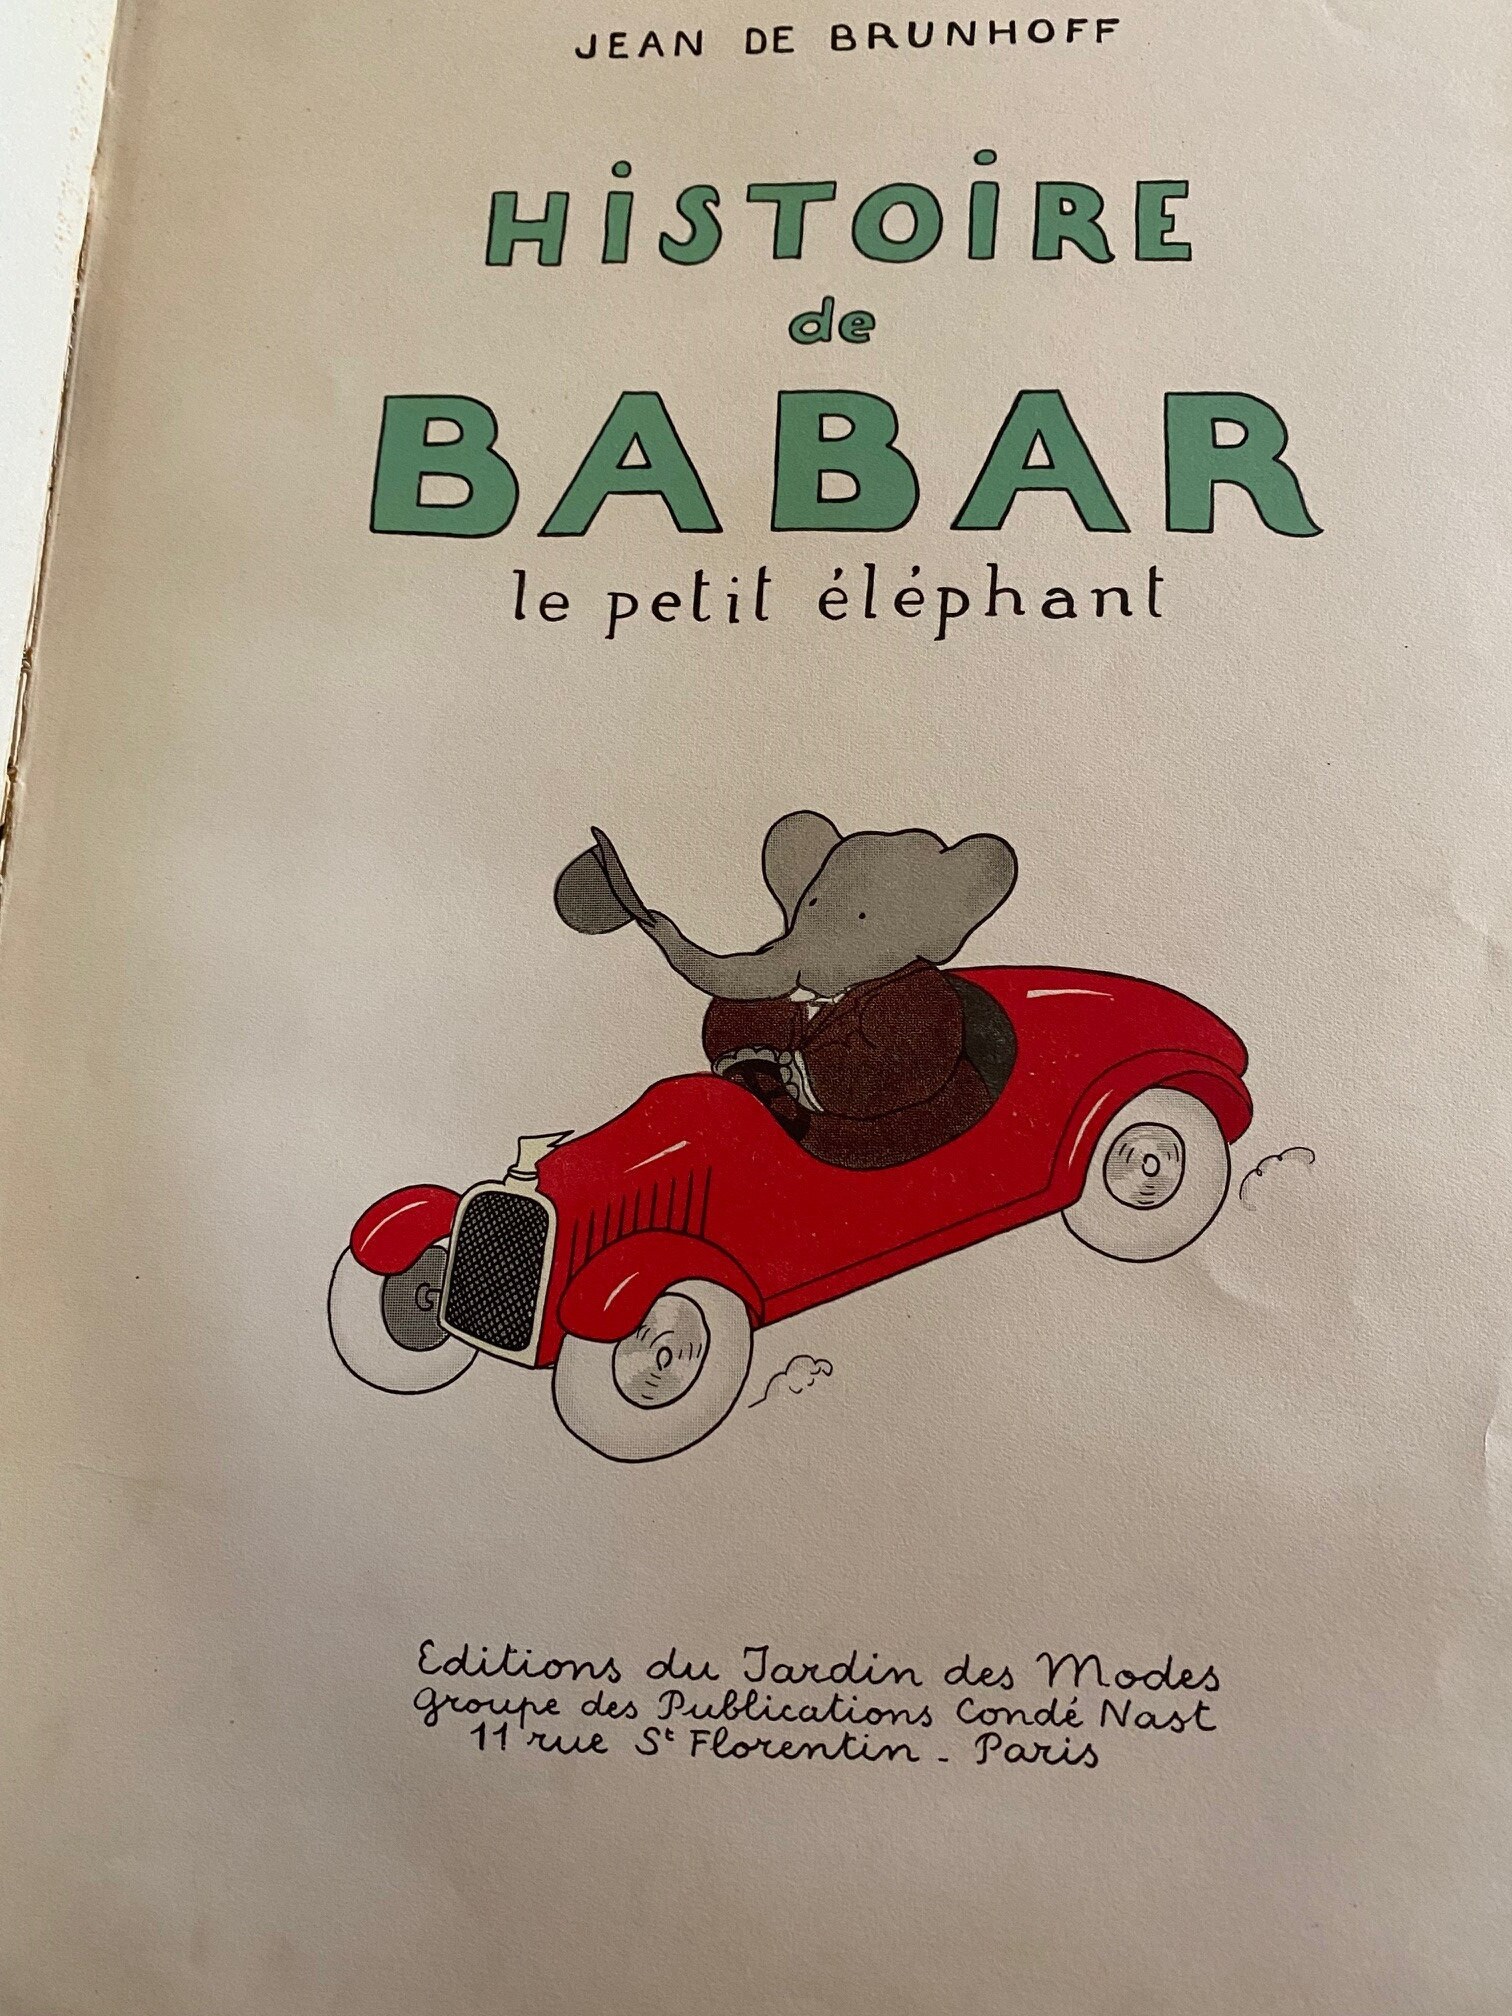 1931 Histoire De BABAR Le Petit Elephant by Jean De Brunhoff pic